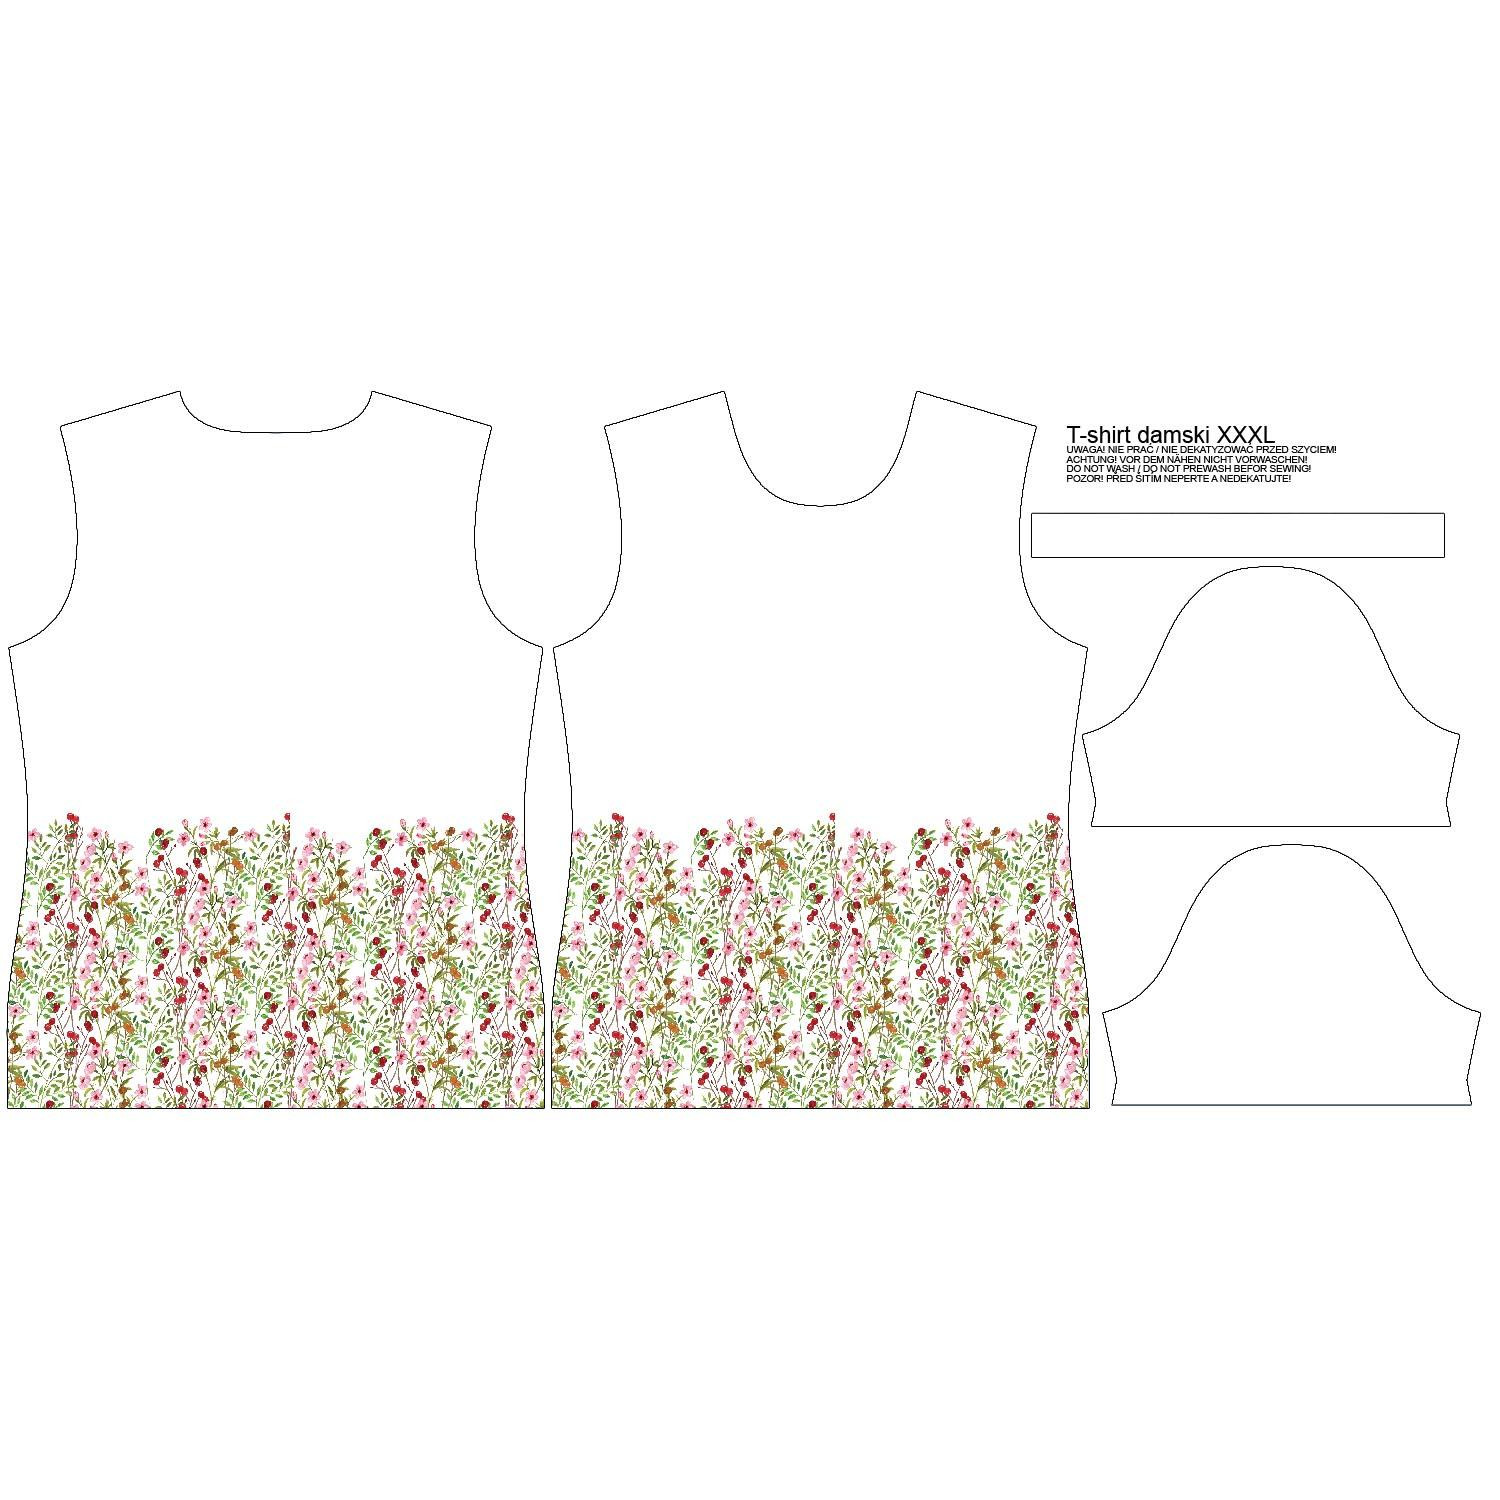 WOMEN’S T-SHIRT - MEADOW PAT. 2 (IN THE MEADOW) - single jersey